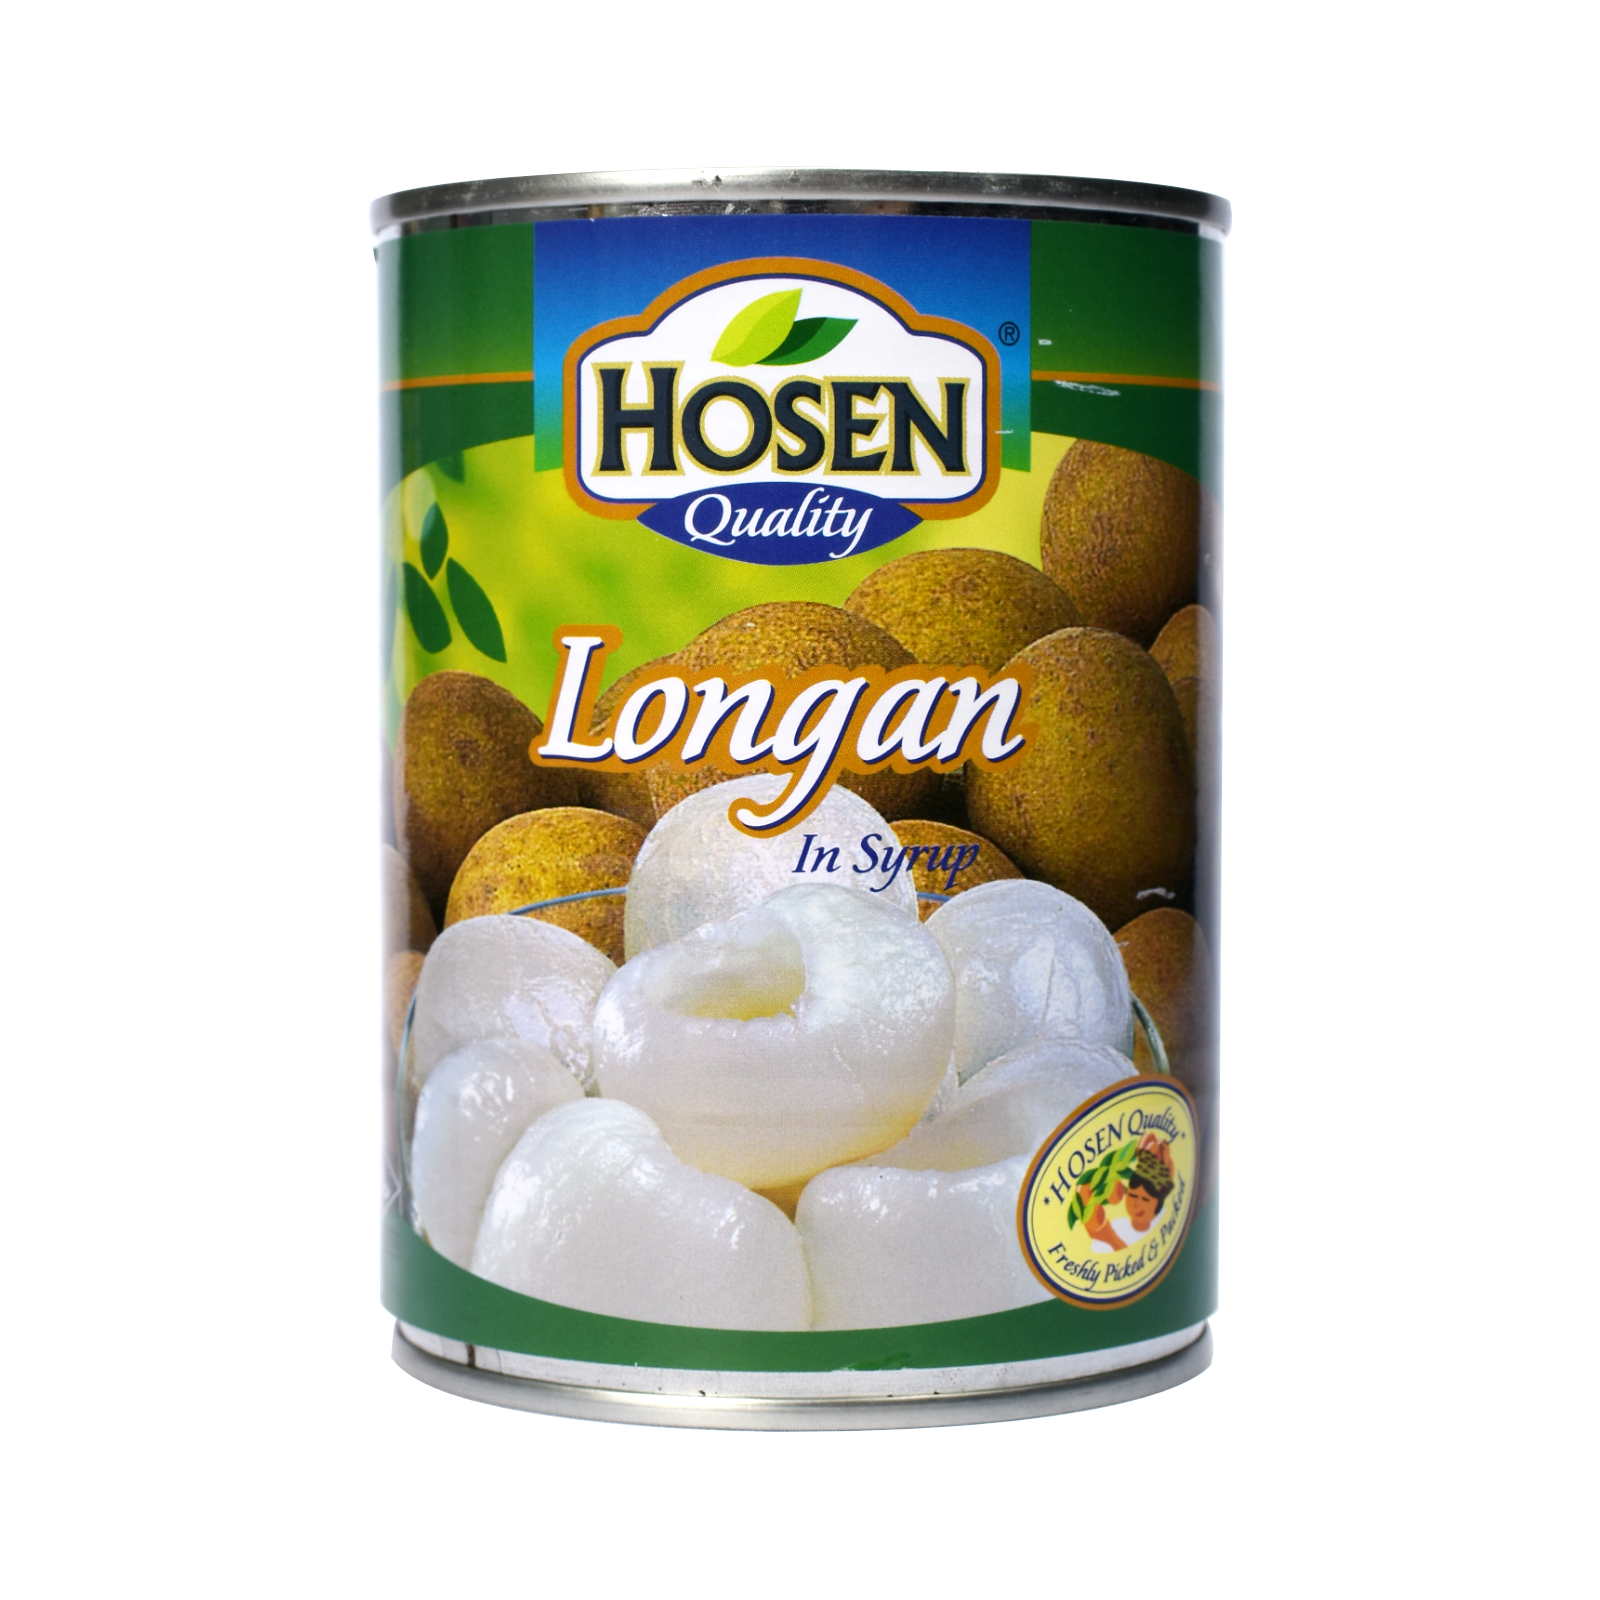 Hosen Longan In Syrup.png